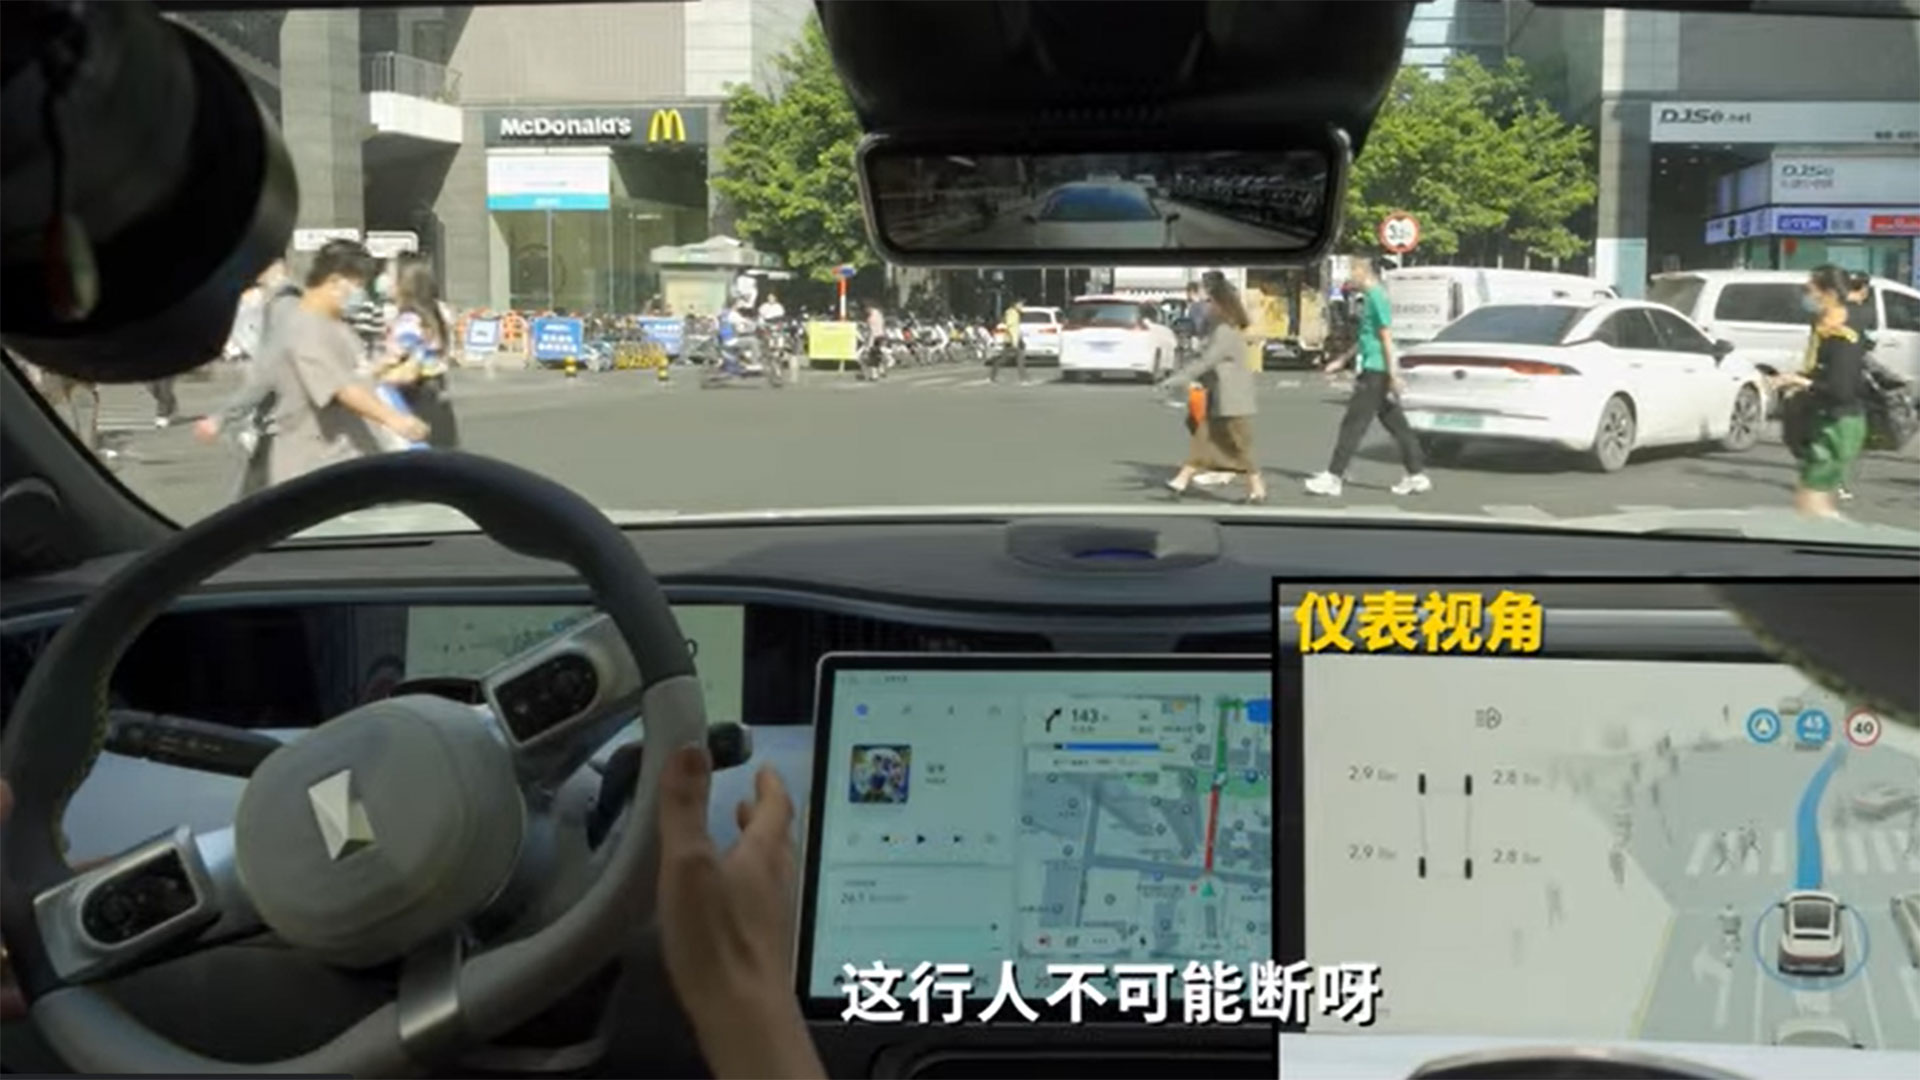 AITO M5 : Huawei présente sa voiture électrique à grande autonomie